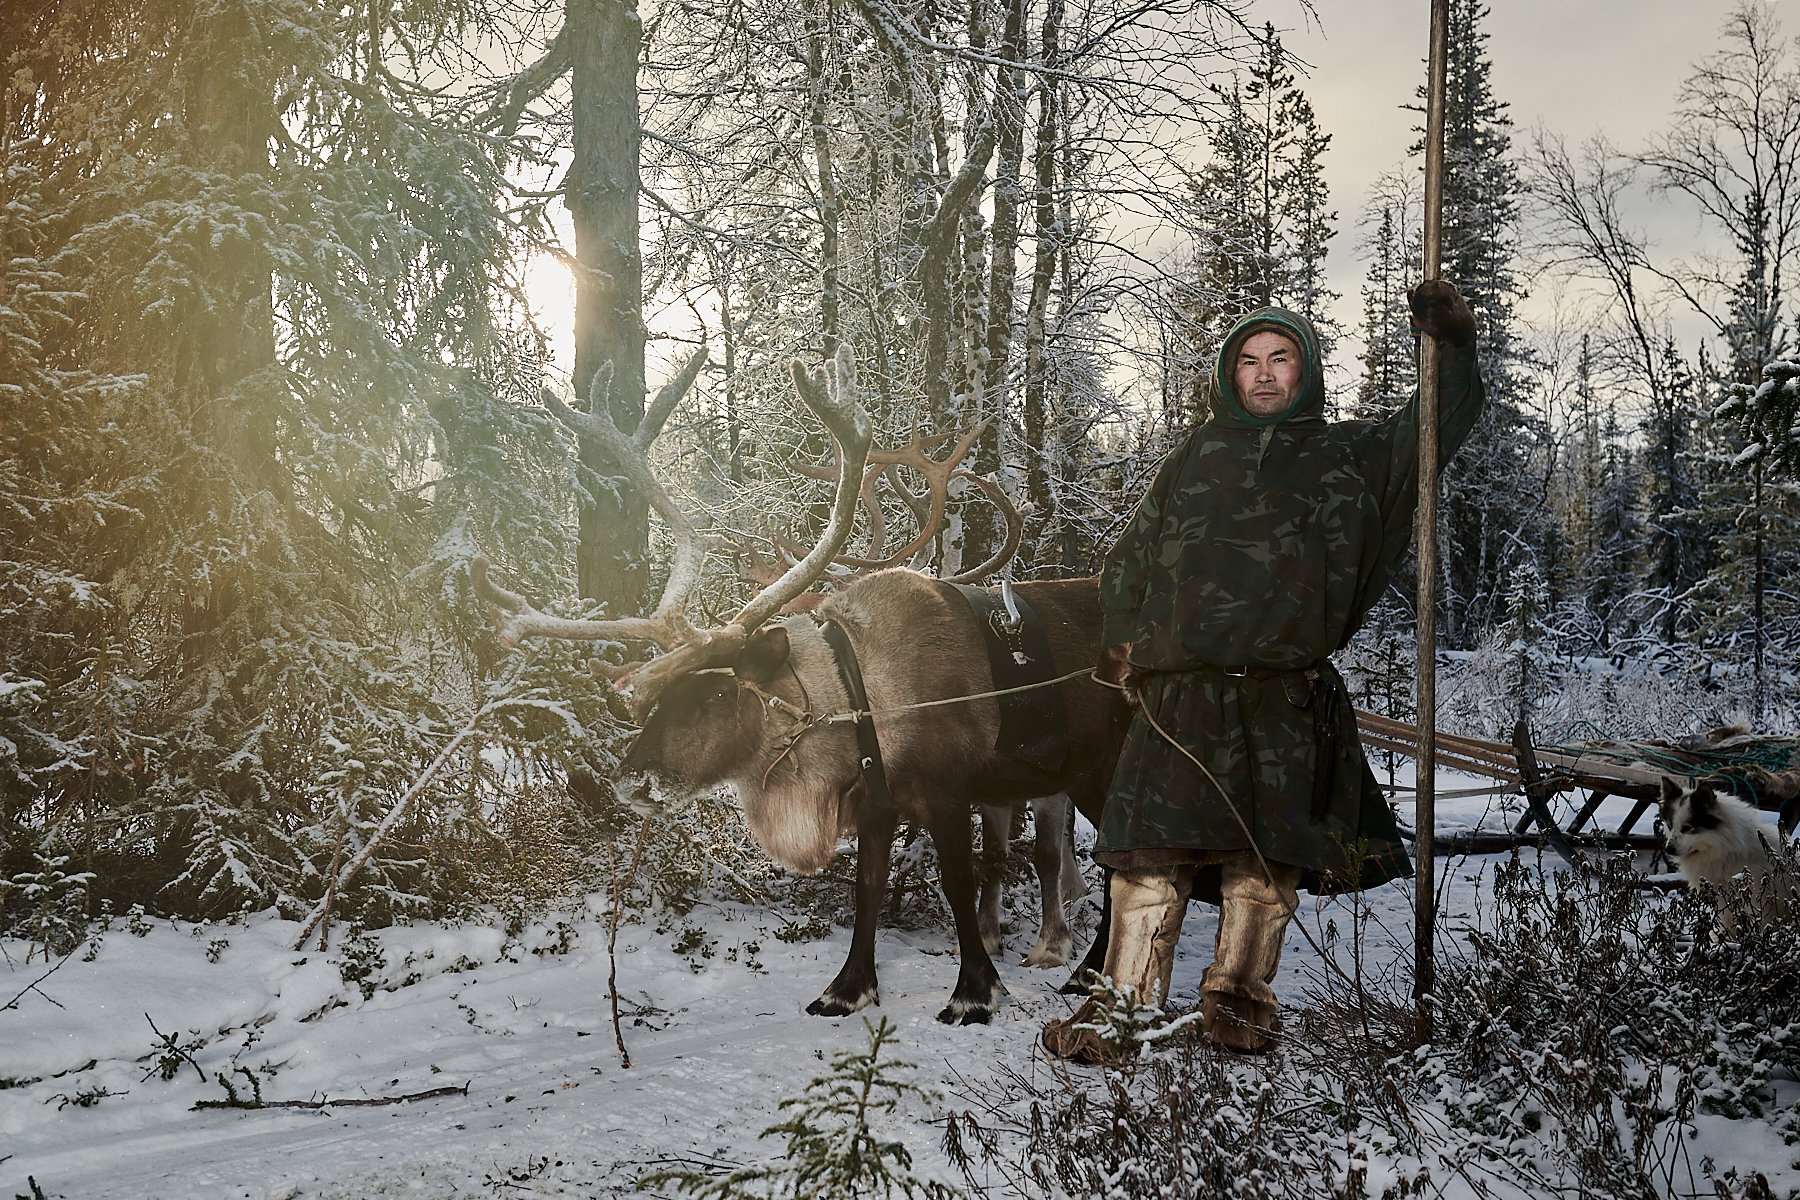 Kostya, a Nenets reindeer herder, Yamal Peninsula, Russia